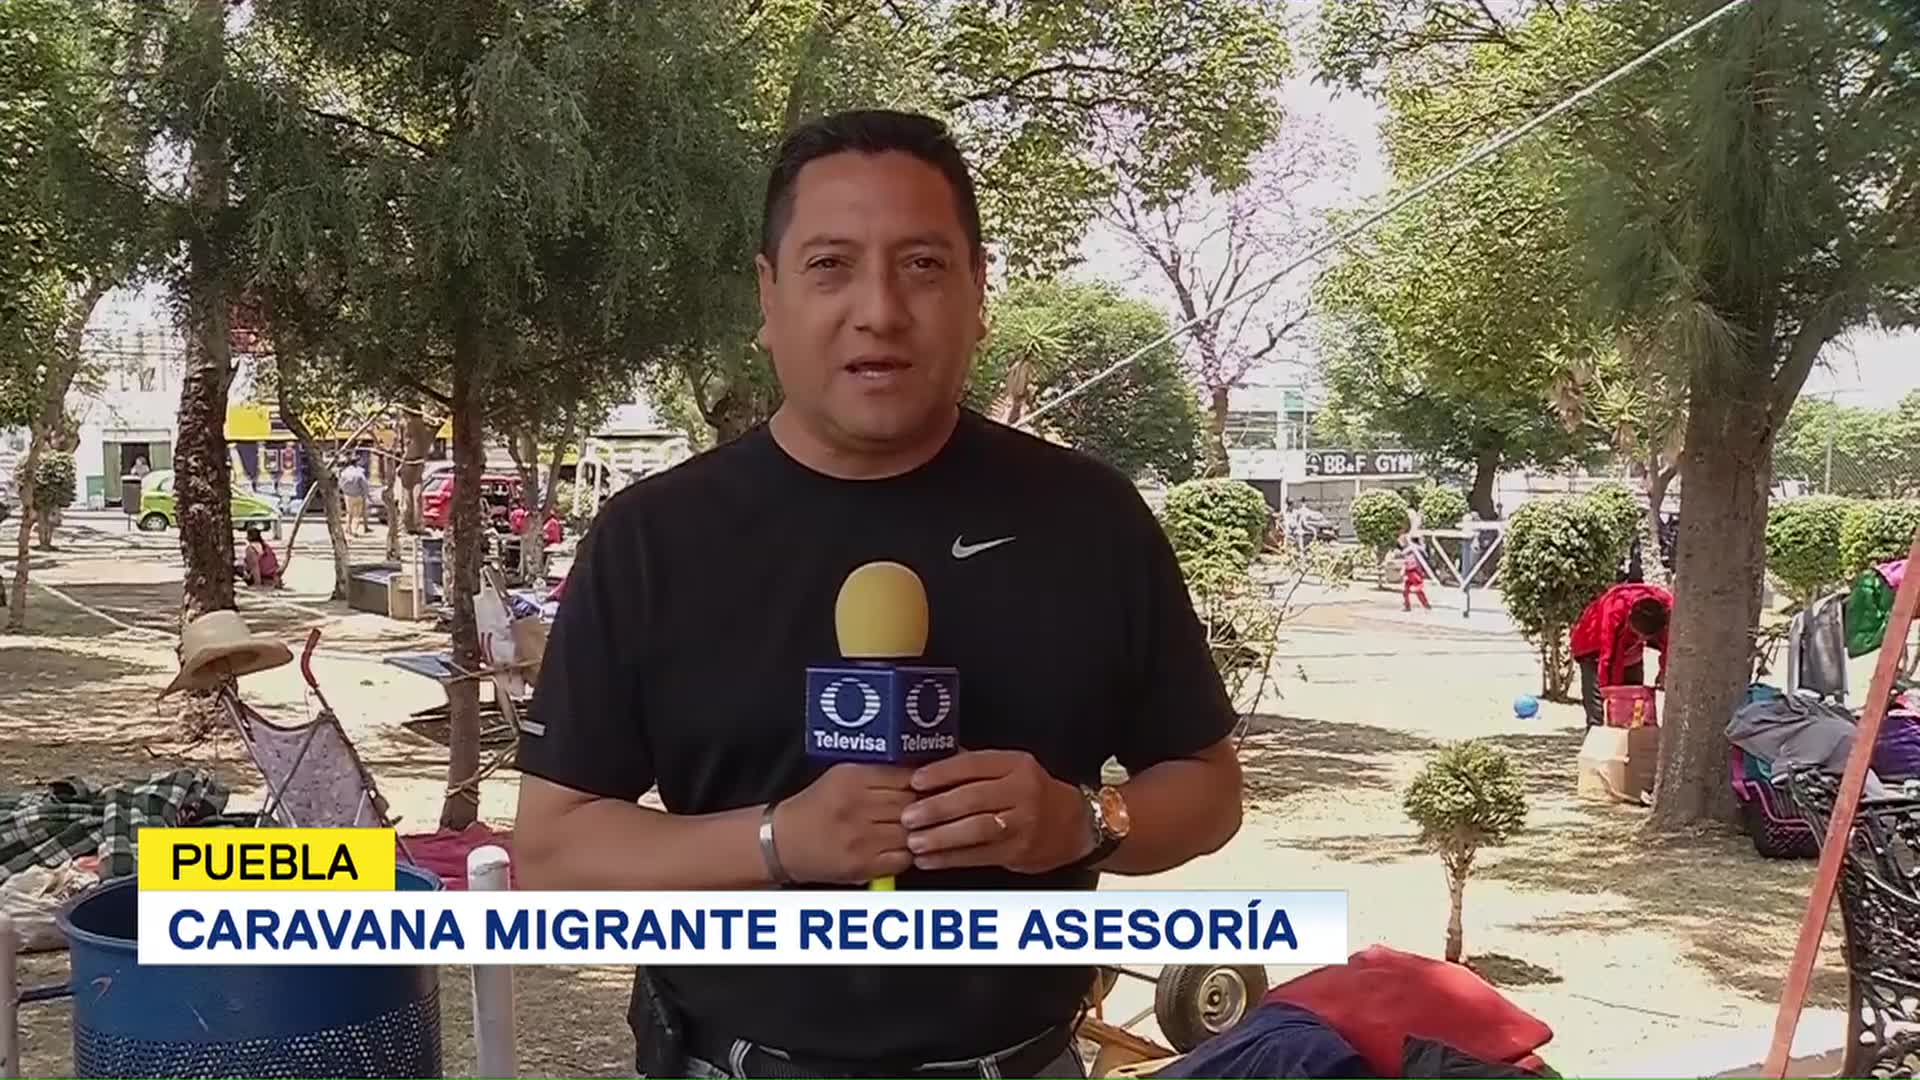 Caravana Migrante Recibe Asesoría Puebla